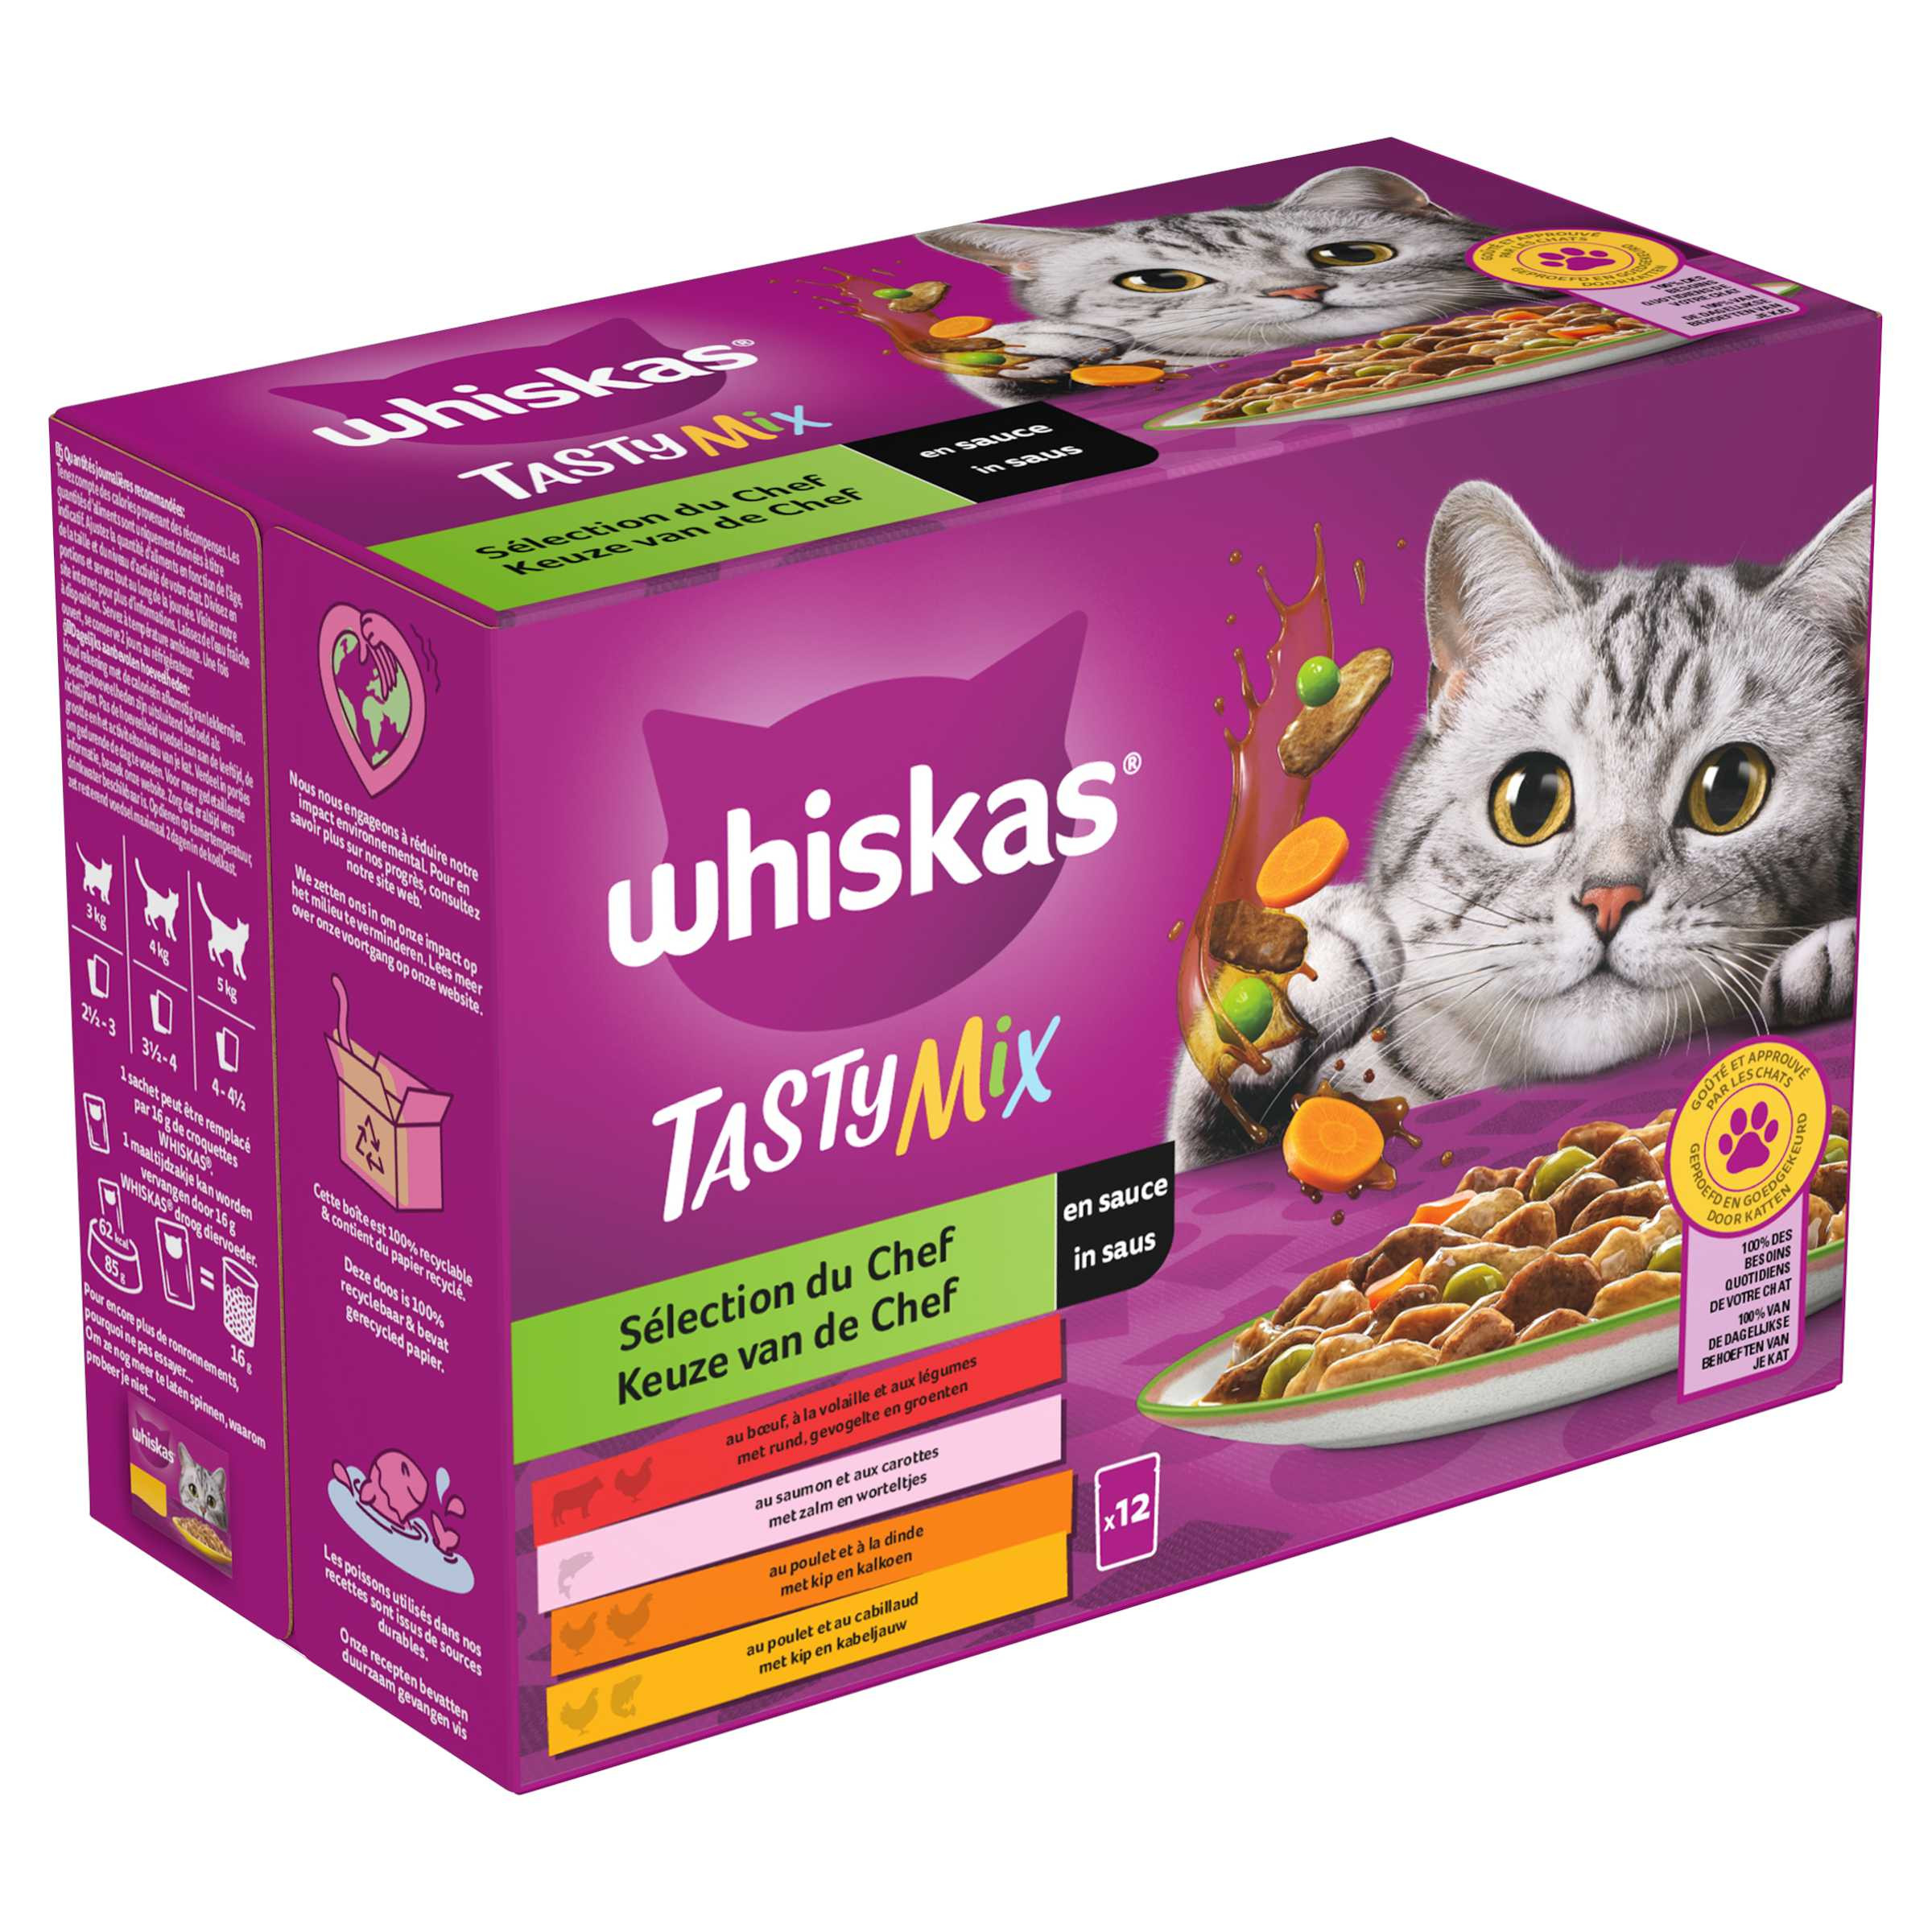 Whiskas 1+ Tasty Mix Keuze van de Chef in saus maaltijdzakjes multipack (12 x 85g)